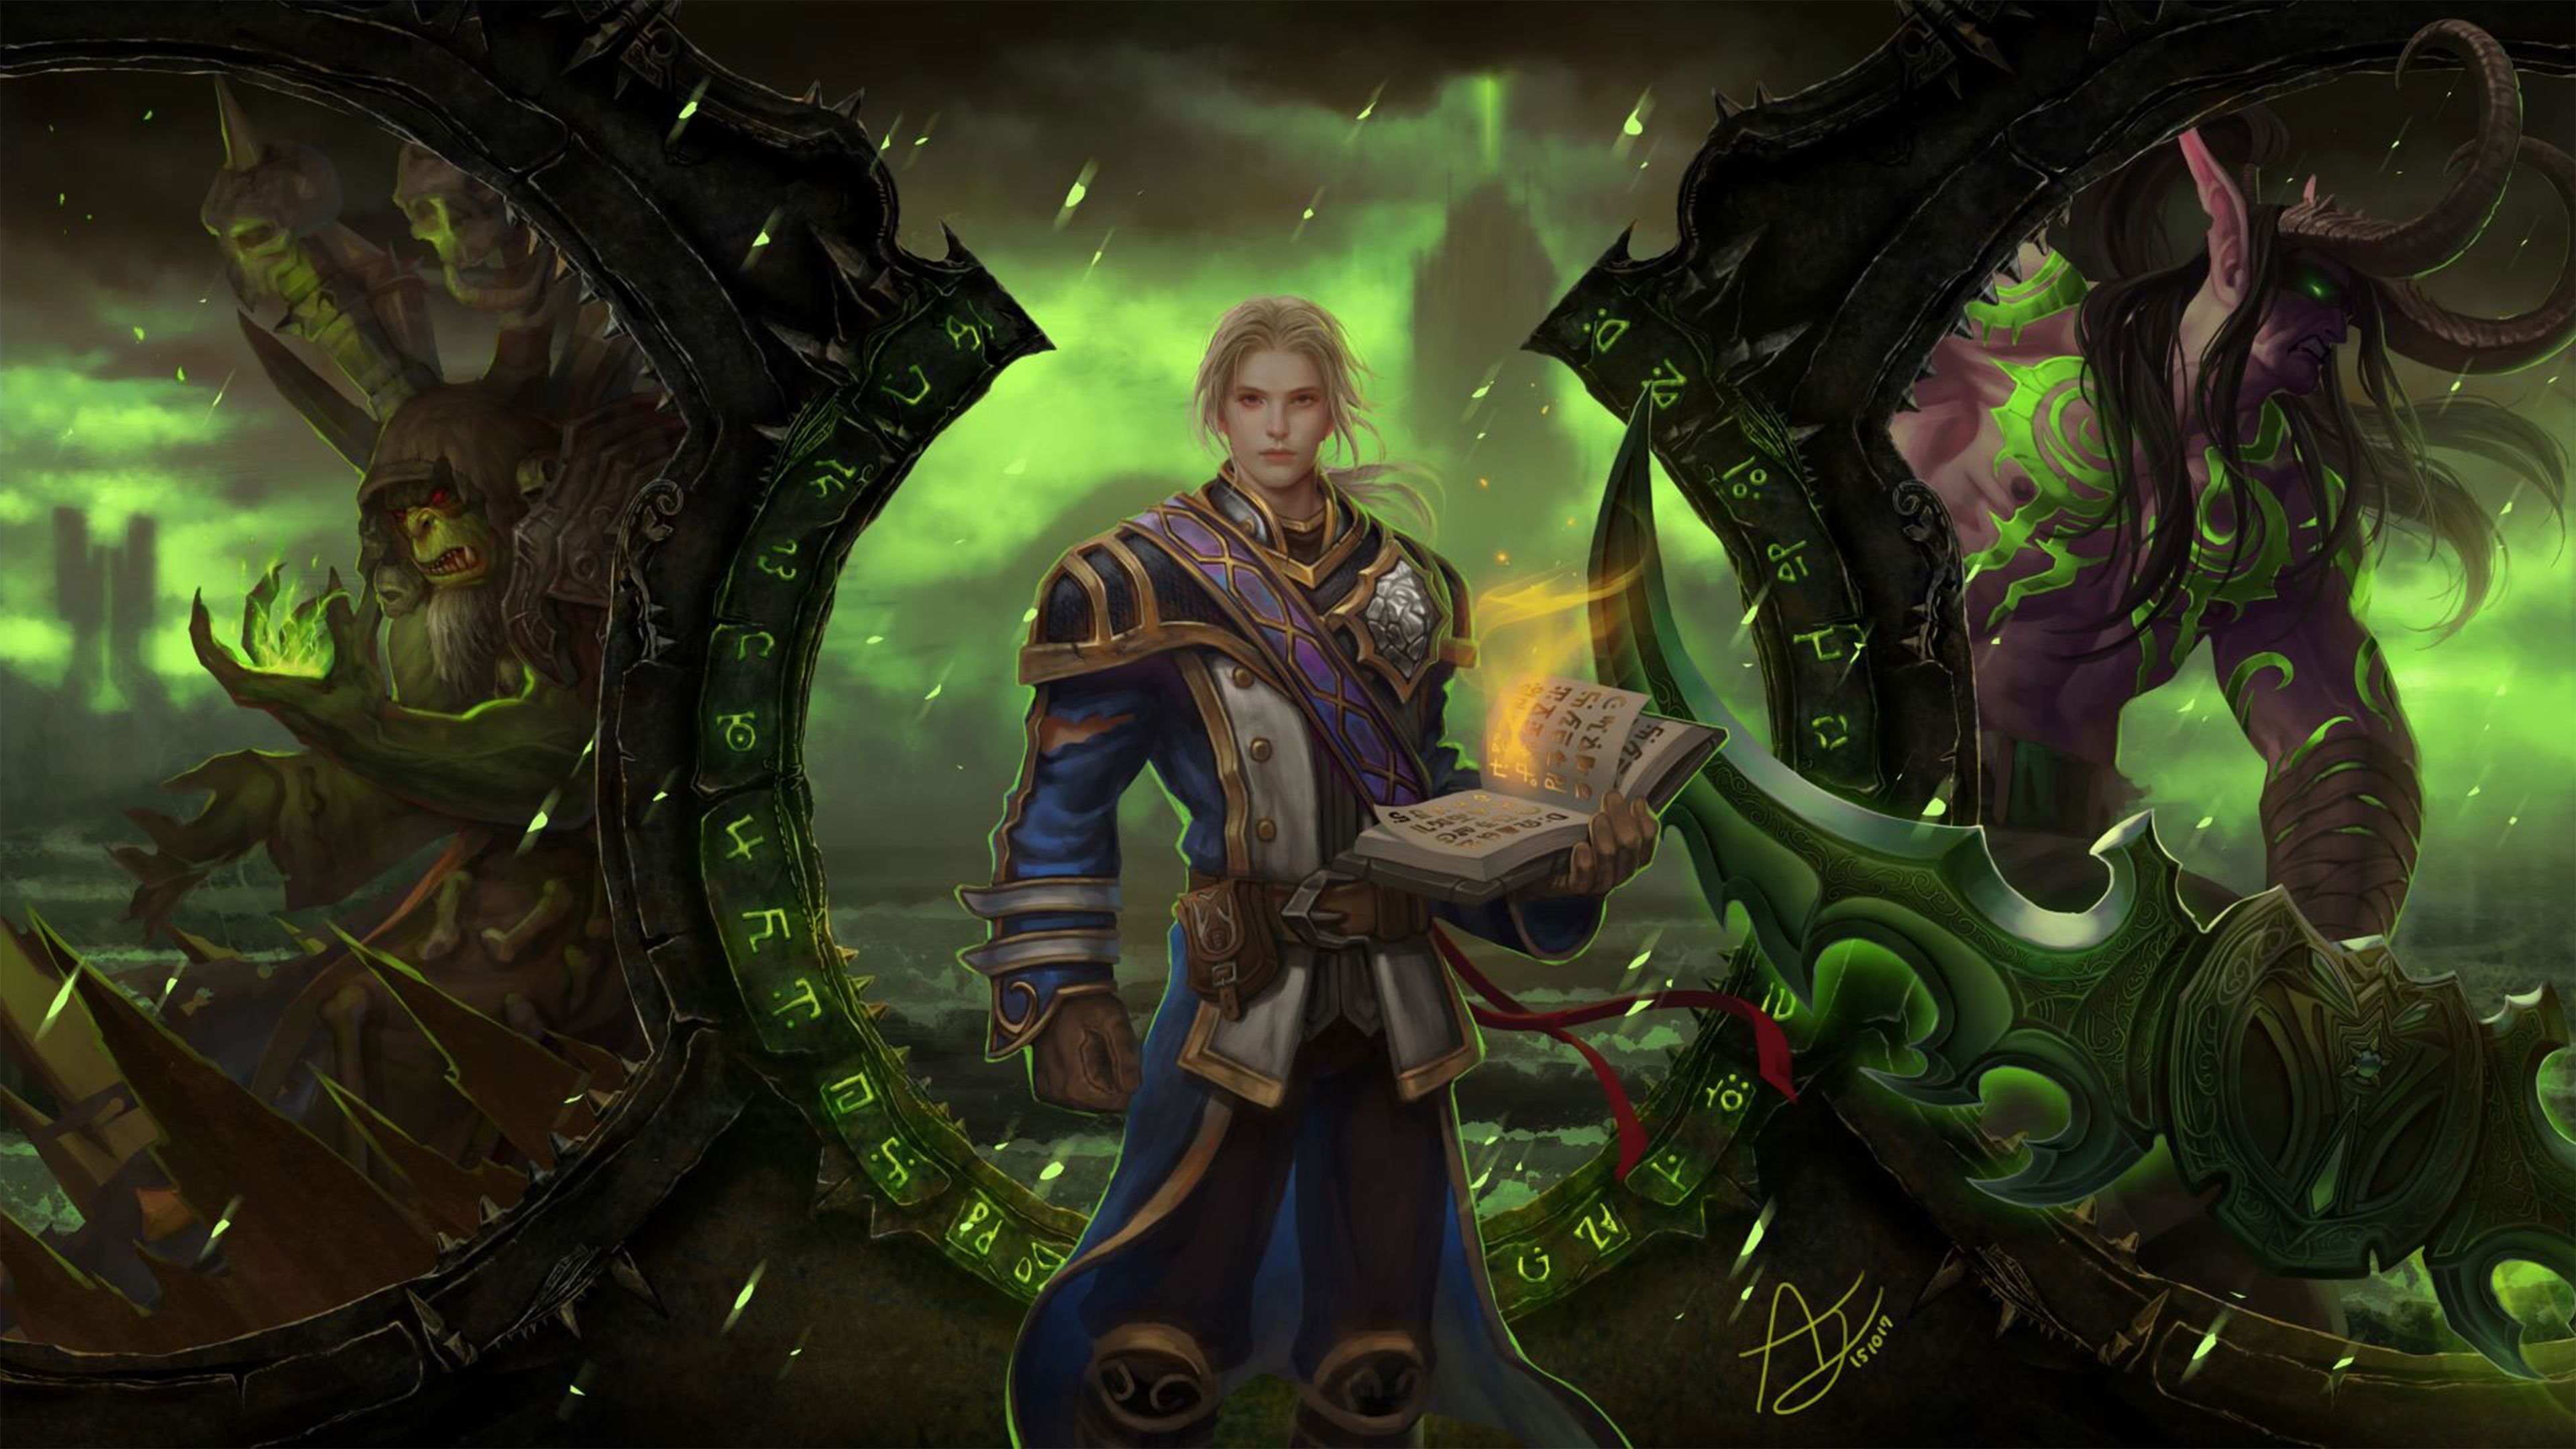 World of Warcraft Legion Wallpaper in Ultra HDK